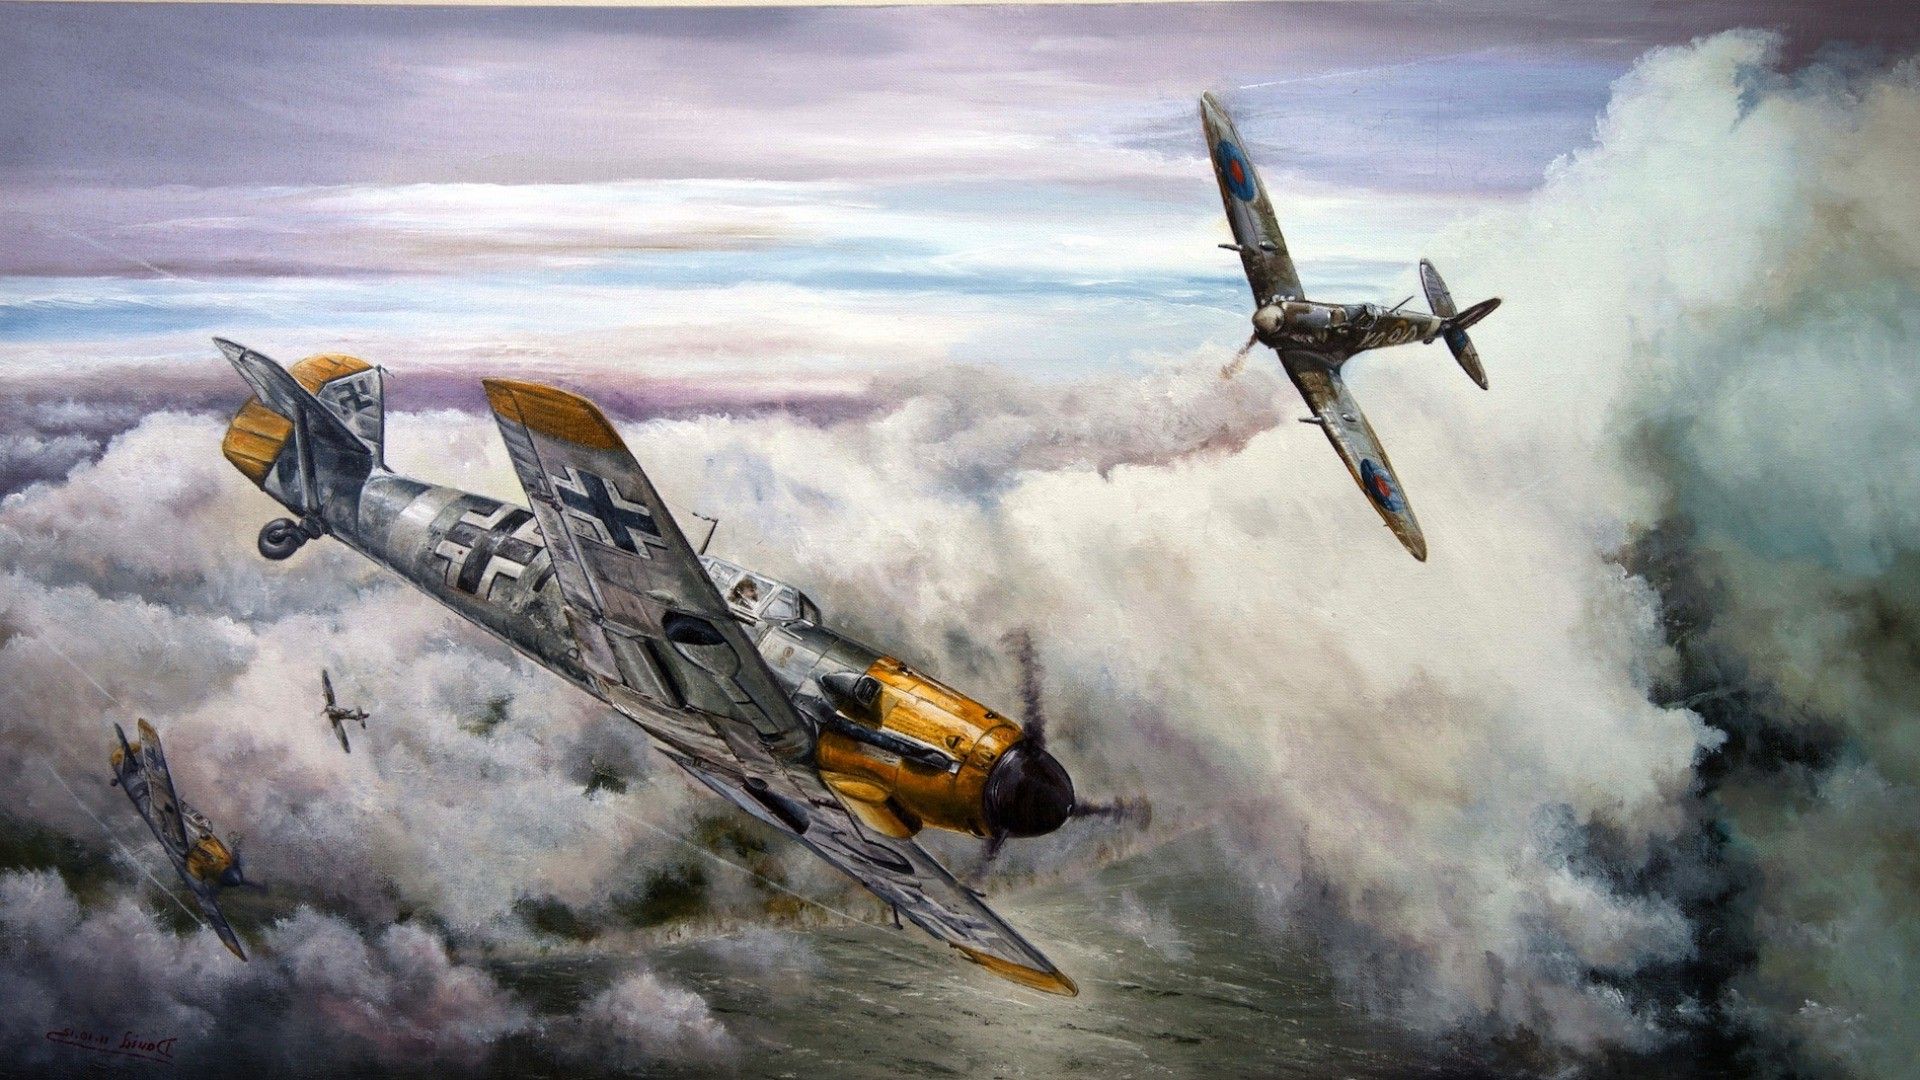 Messerschmitt, Messerschmitt Bf World War II, Germany